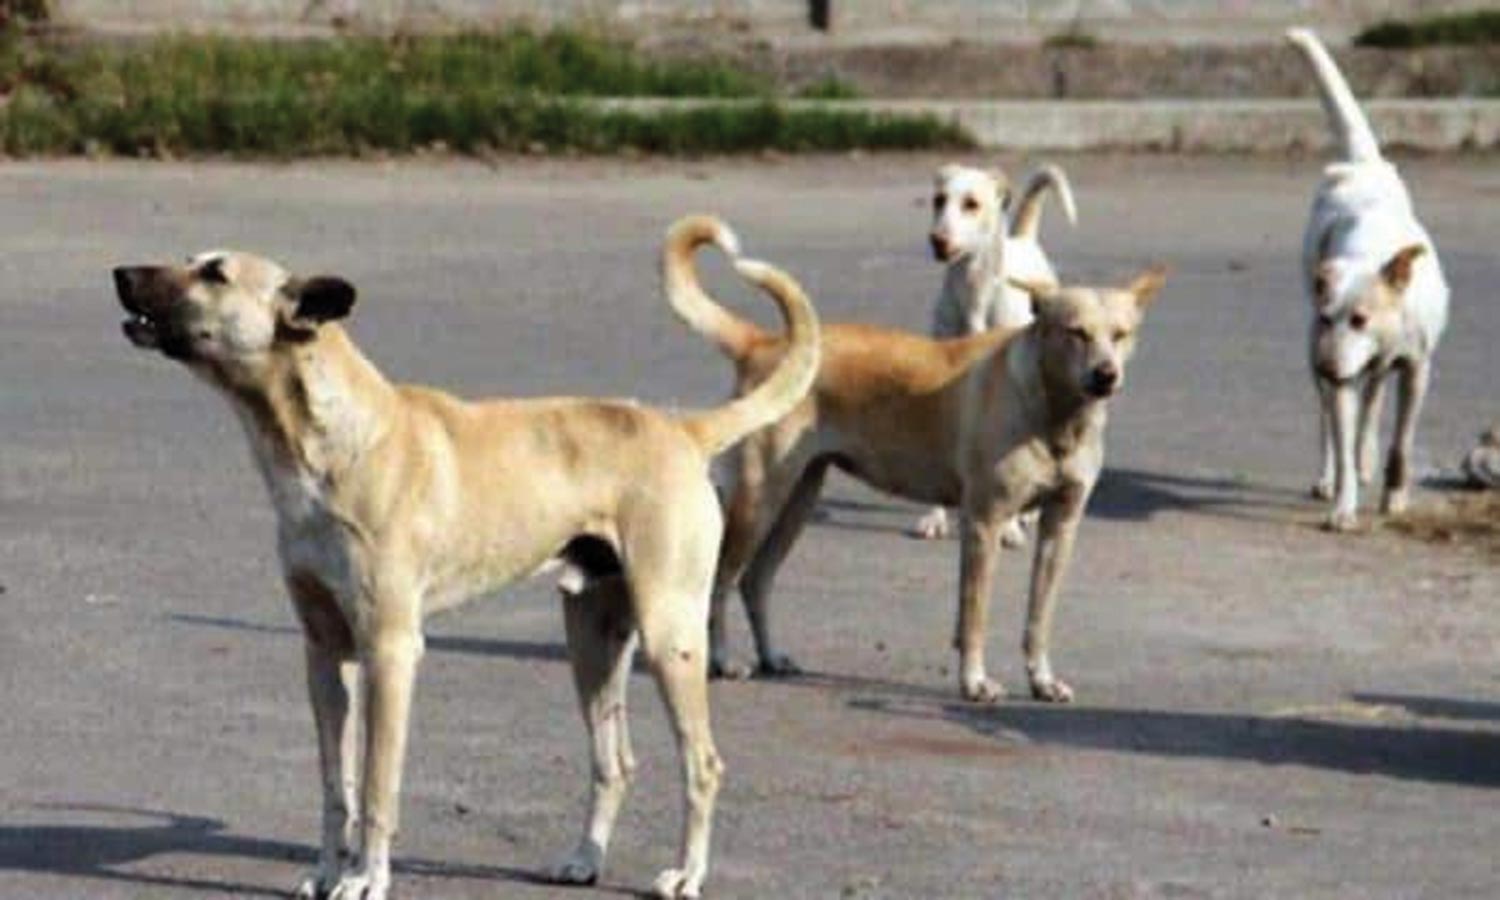 நாய் கடித்து 6 மாதங்களுக்கு பிறகு நாய் போல் குரைத்த தொழிலாளி | Tamil News A  worker who barked like a dog 6 months after being bitten by a dog in Odisha  was injured because